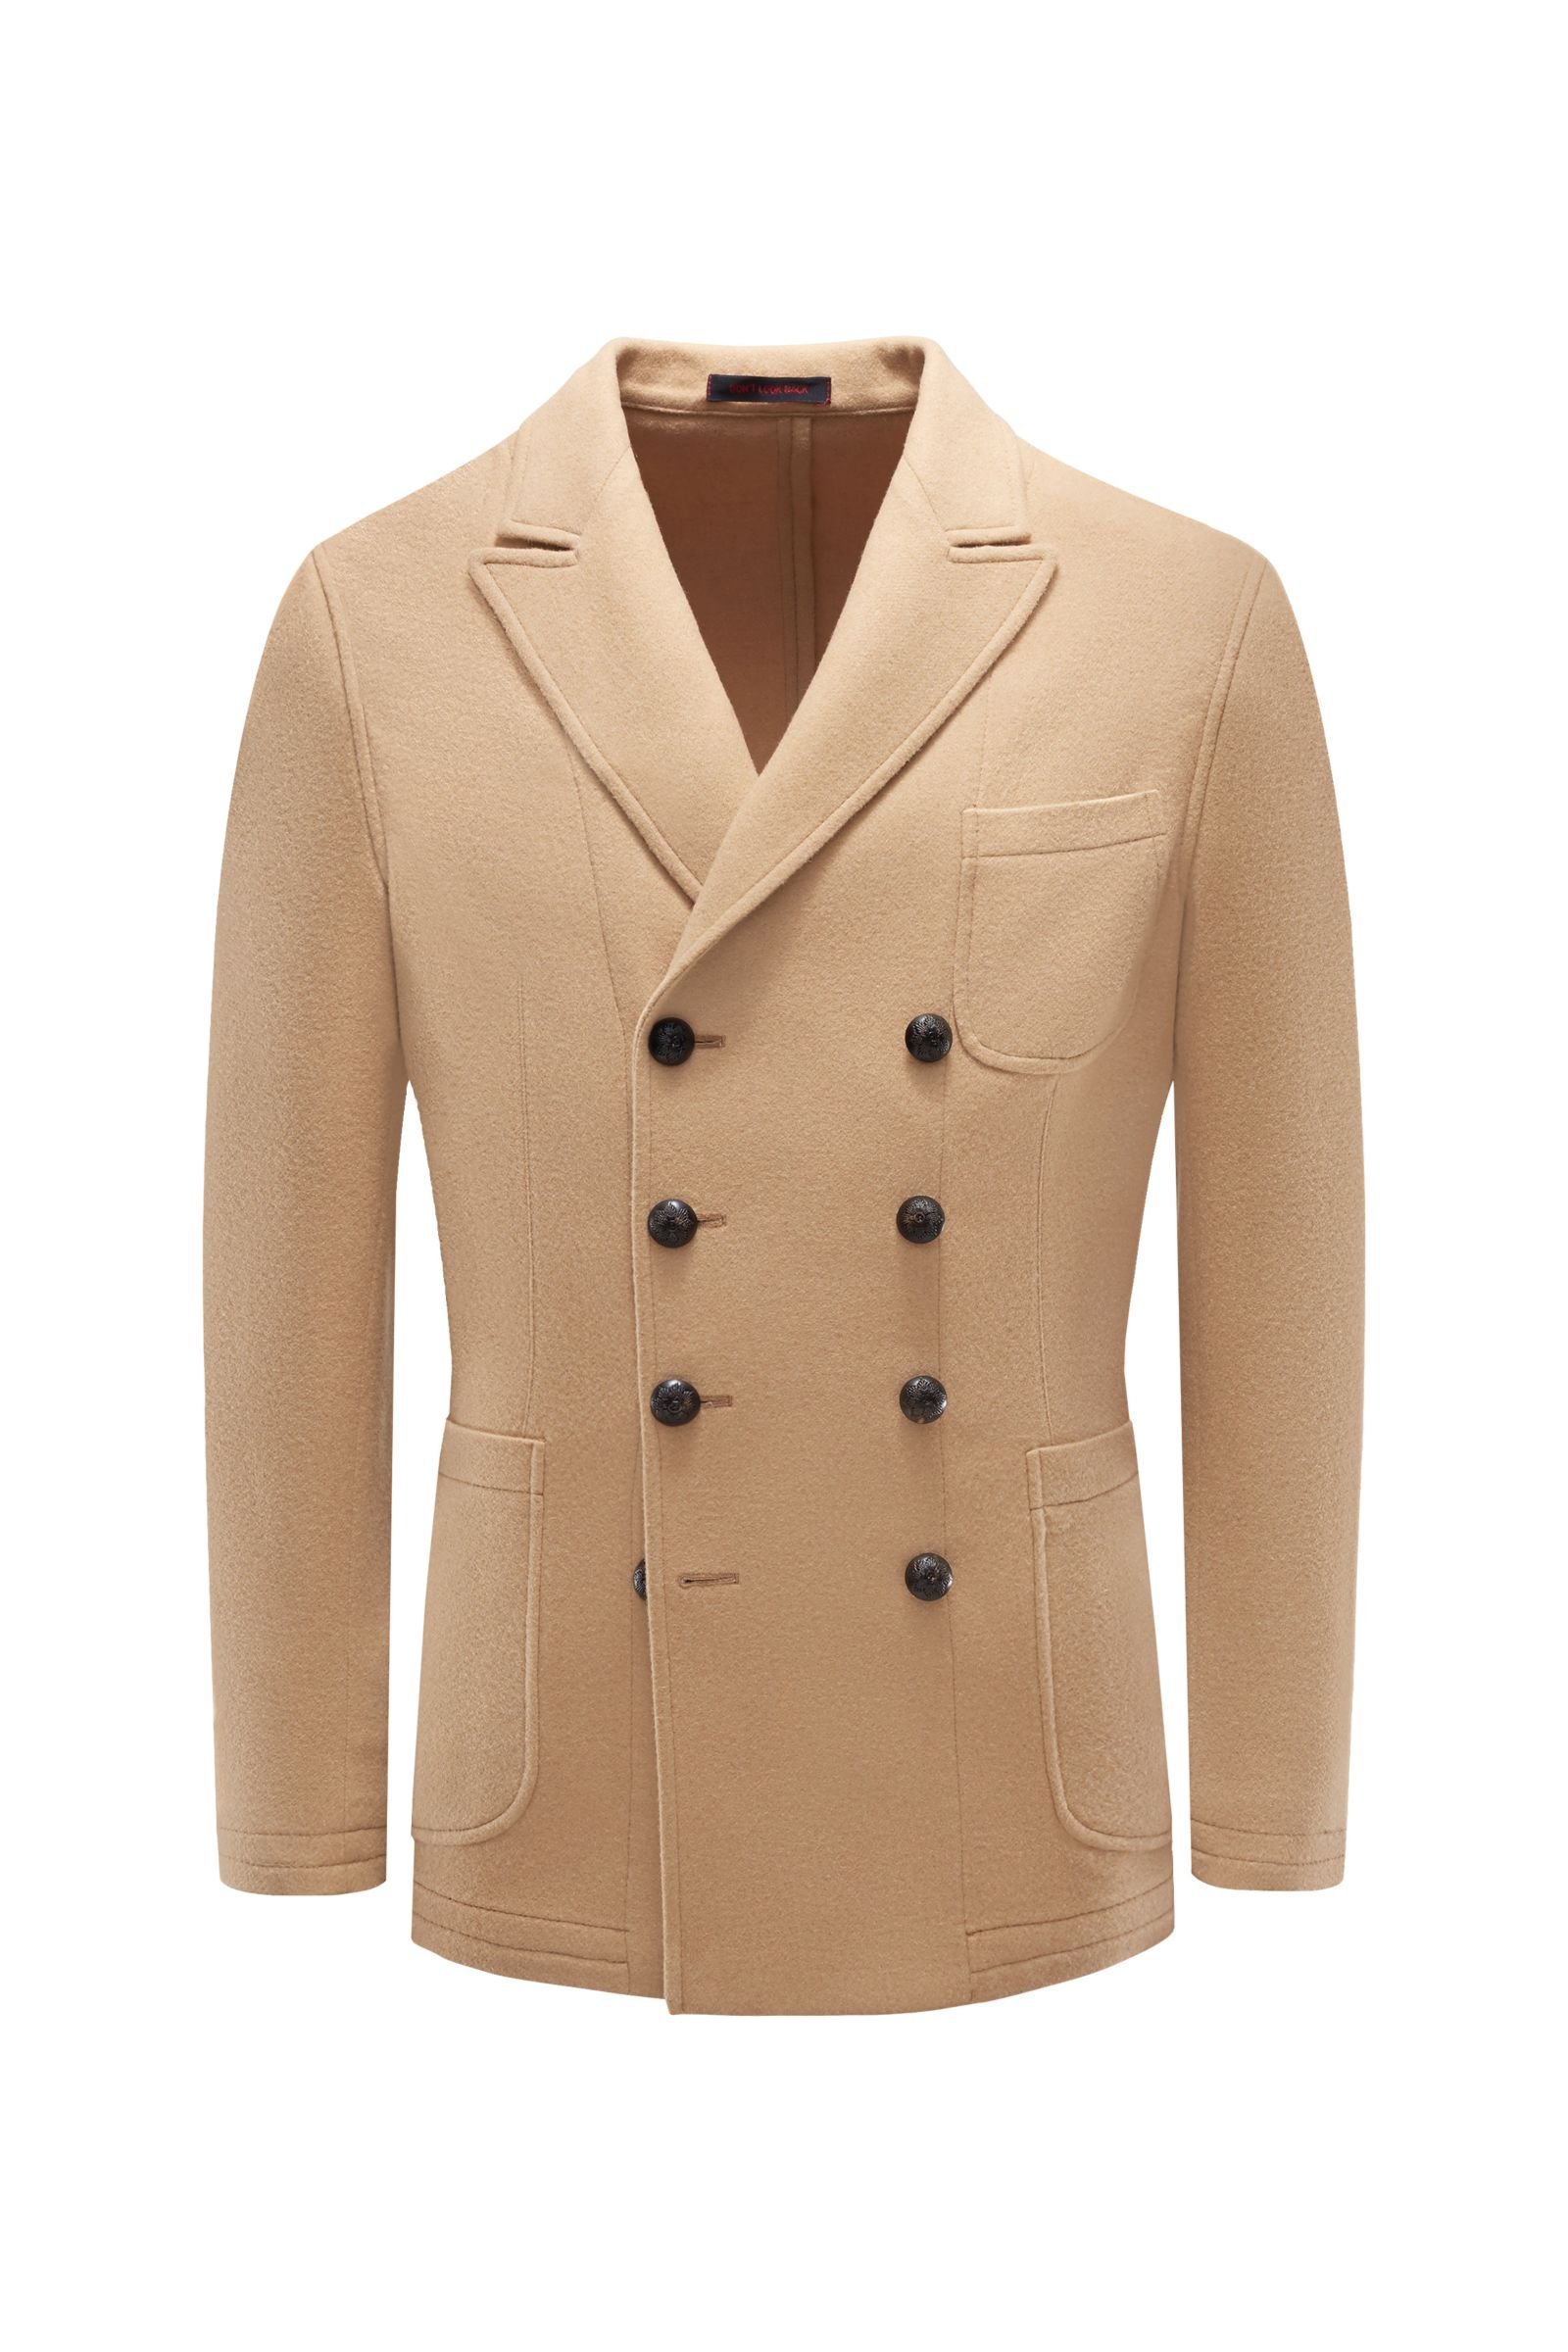 Smart-casual jacket 'Ziggy' light brown